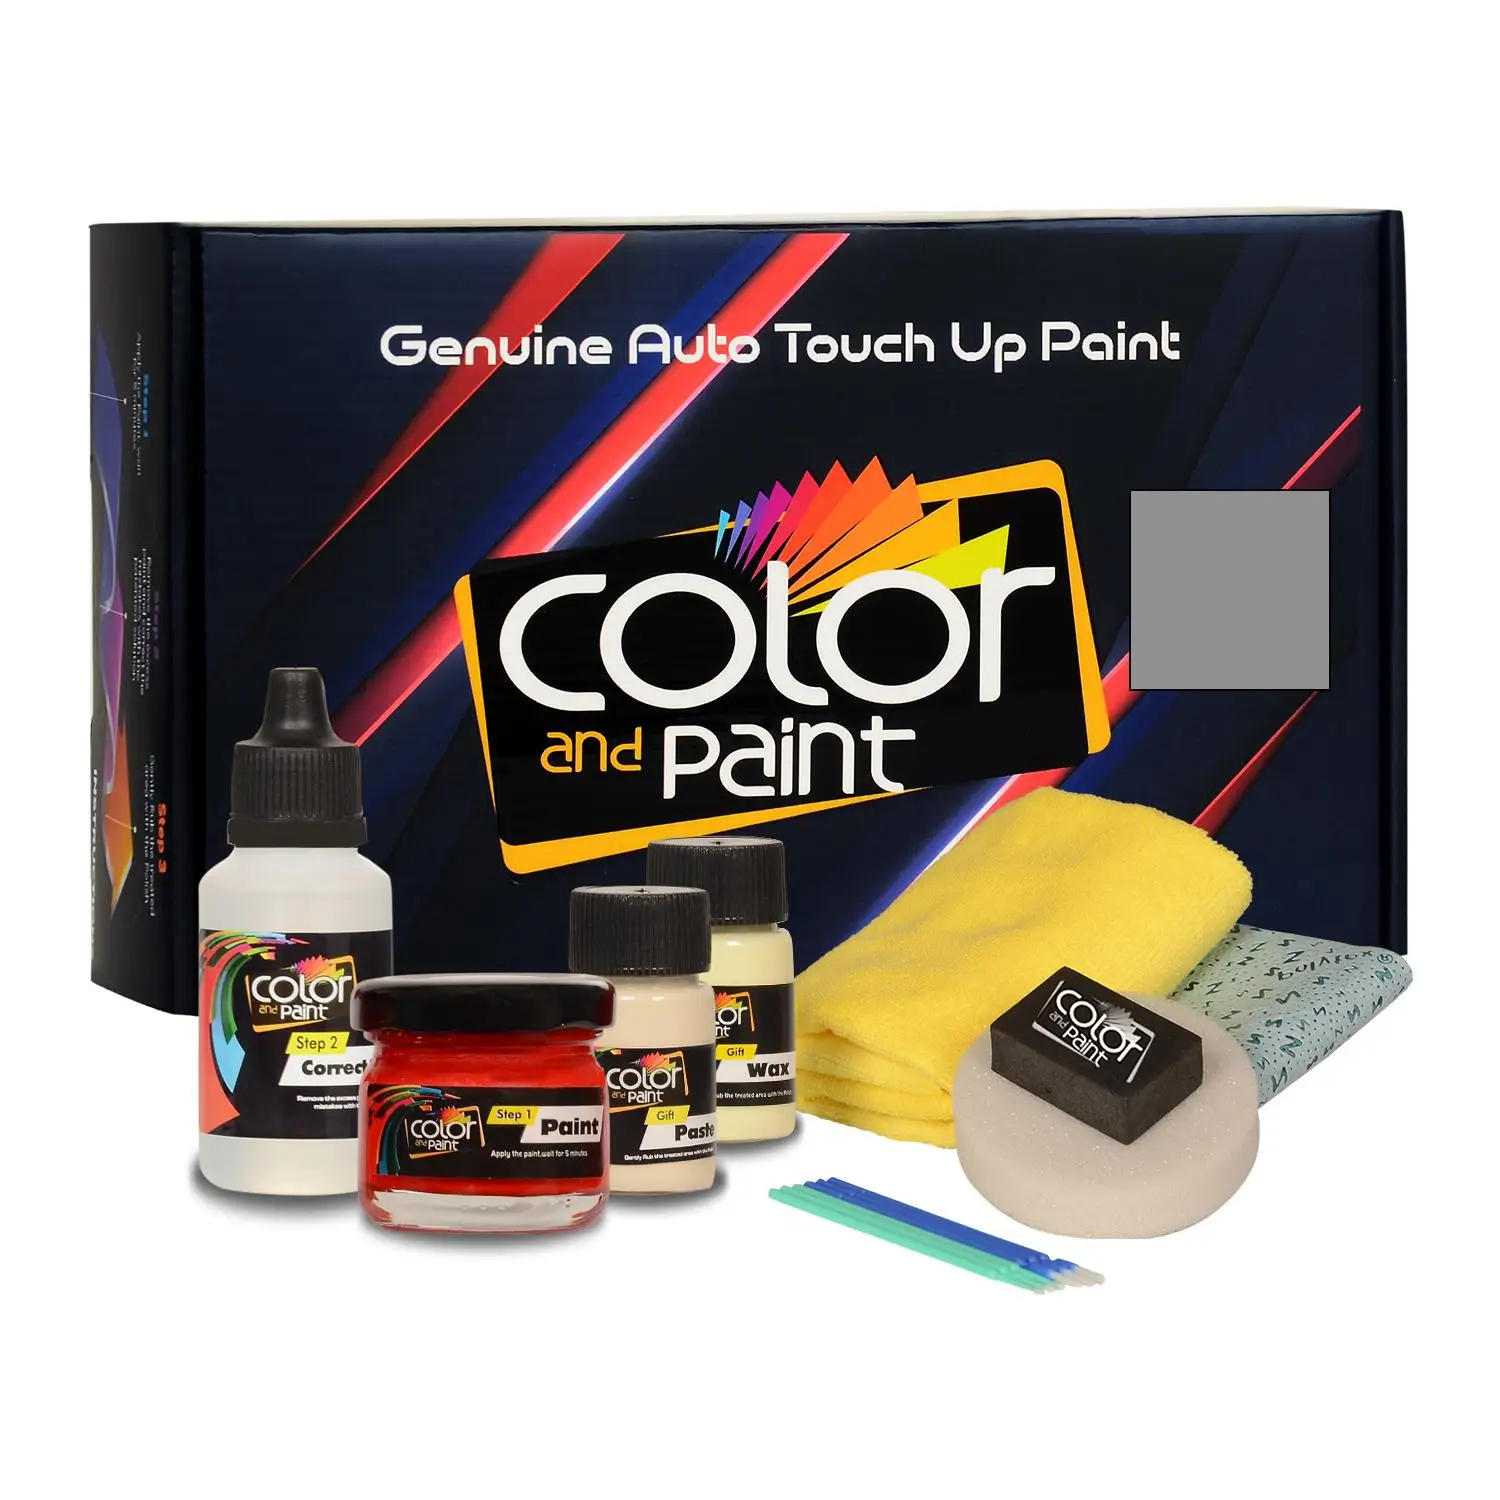 

Цветная и краска, совместимая с Cadillac, автомобильная краска для подкрашивания-уголь MET-известняк 8945-базовый уход